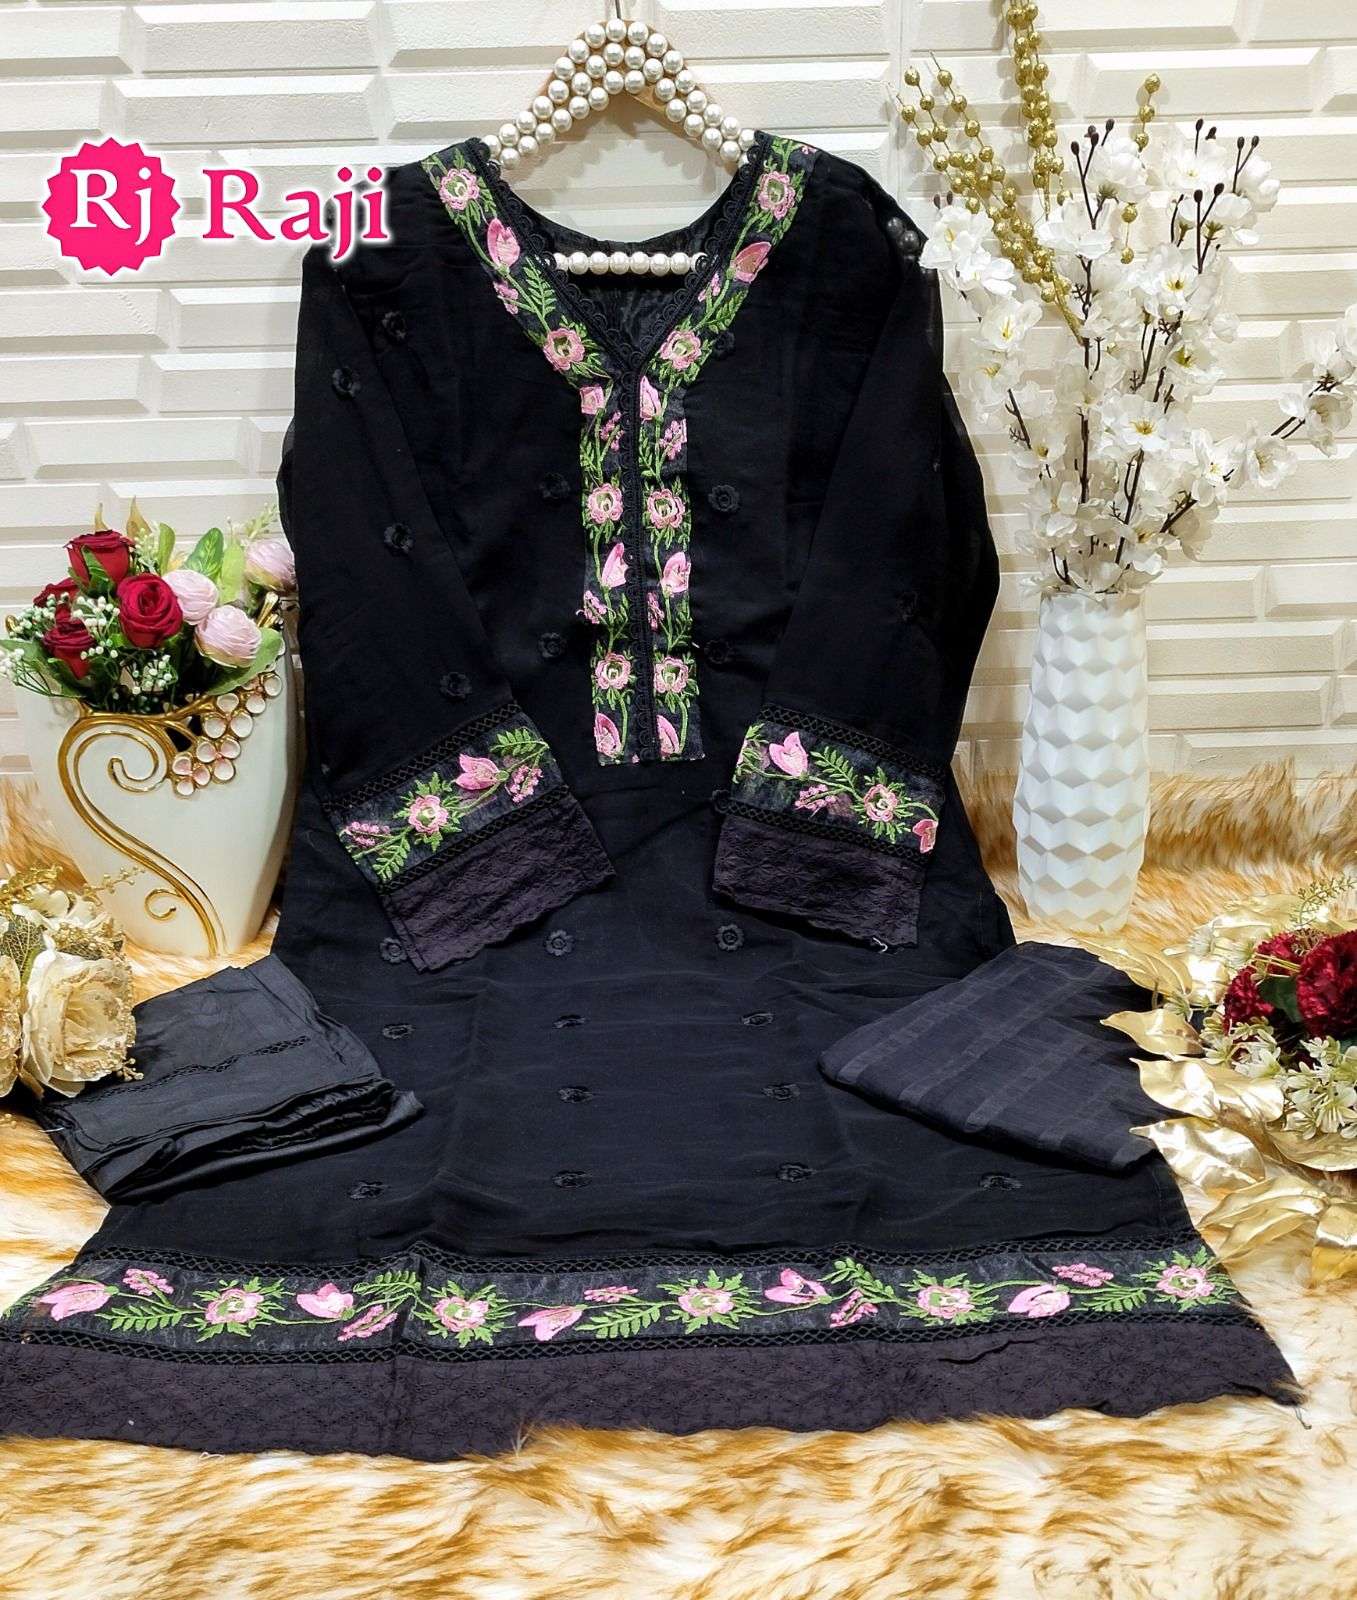 raji 303 series trendy designer salwar suits online supplier surat